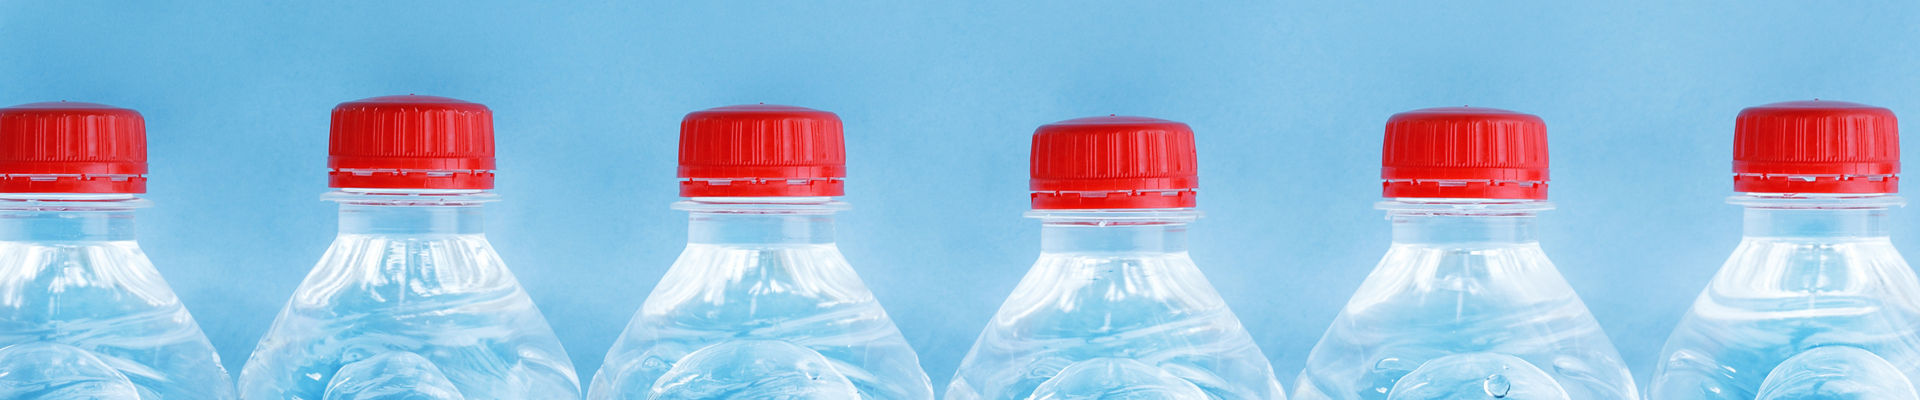 Water bottle caps 